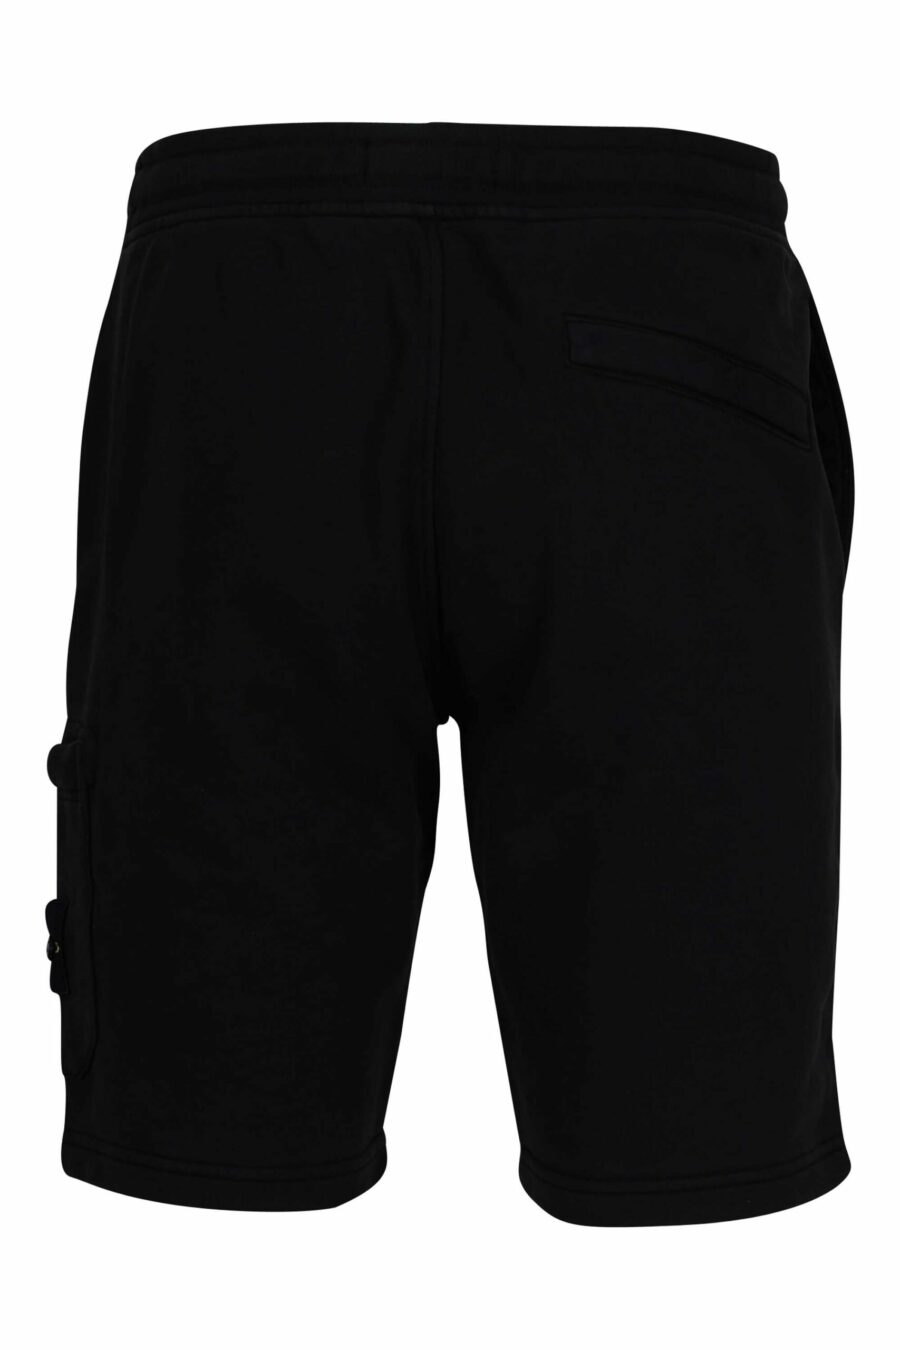 Pantalón de chándal corto negro con logo parche brújula - 8052572852916 2 scaled